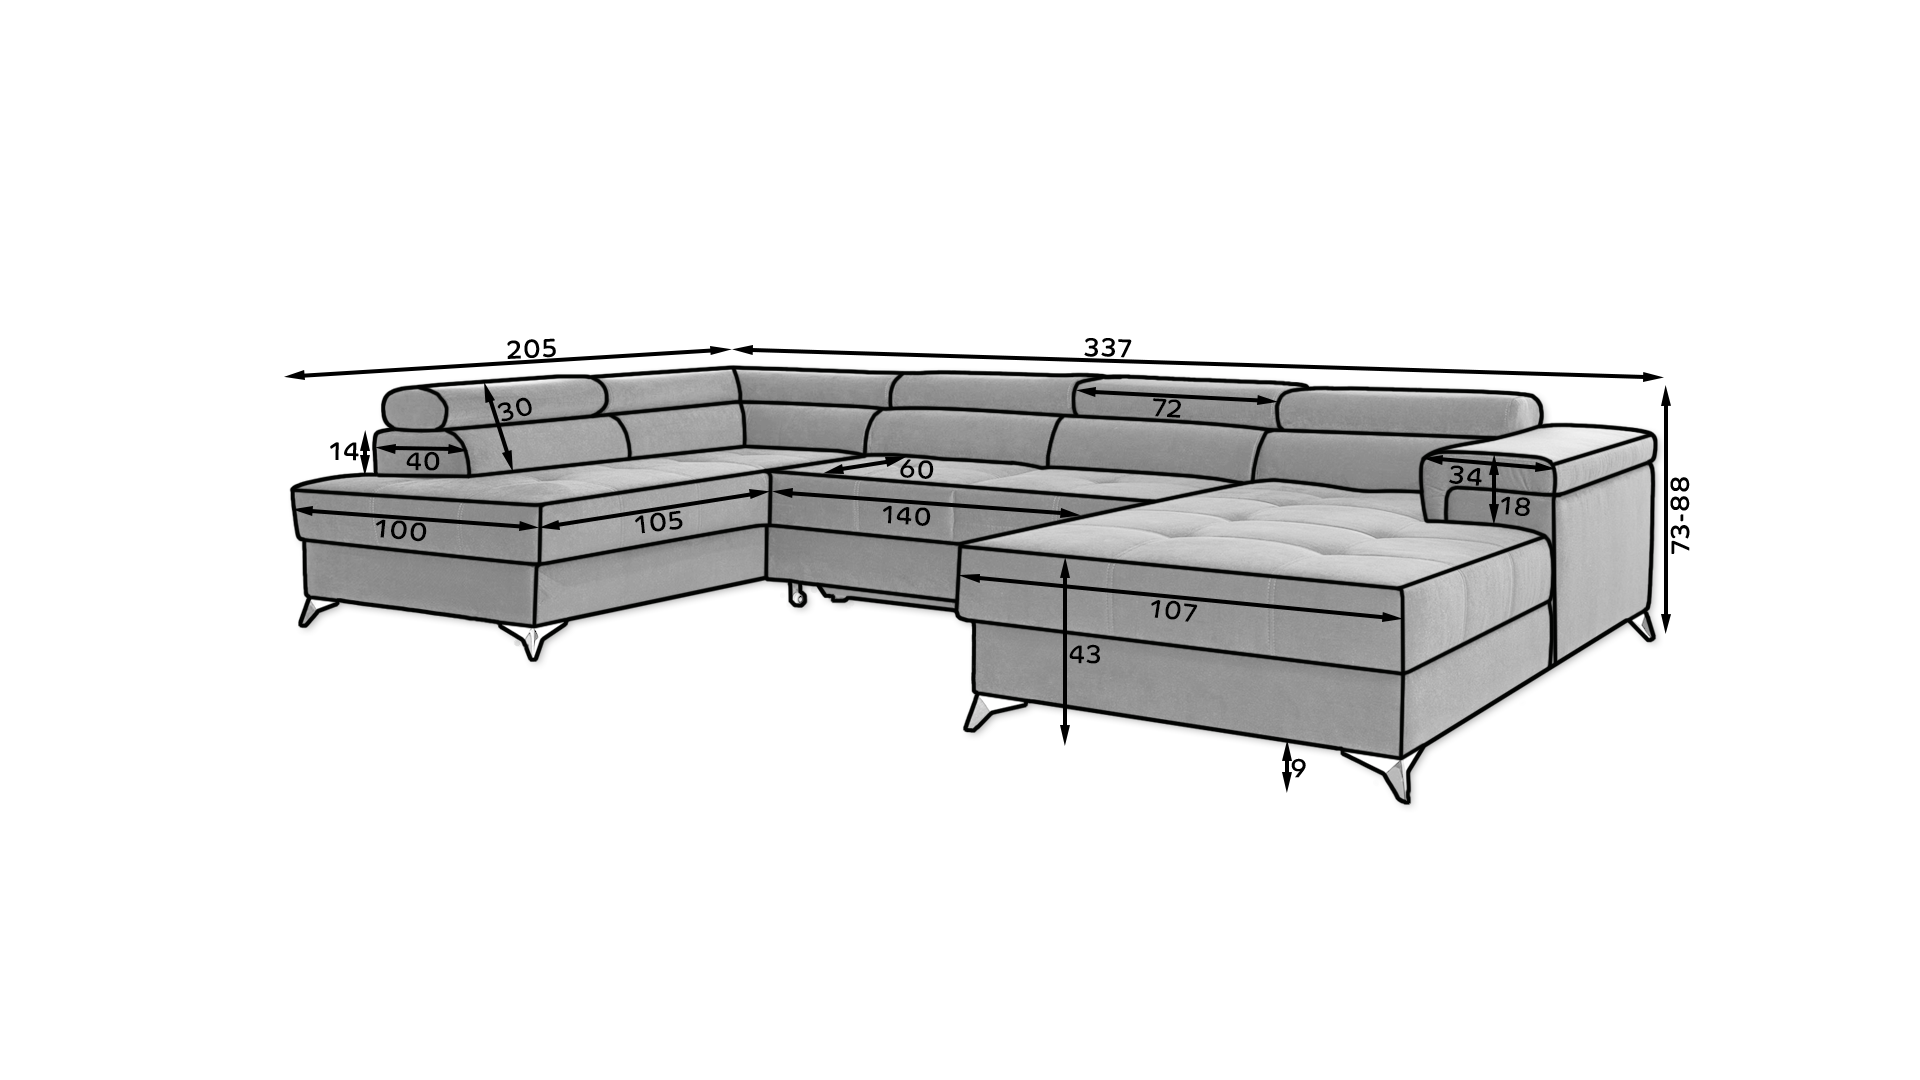 Sofa cama - Eduardo OFERTA color gris oscuro